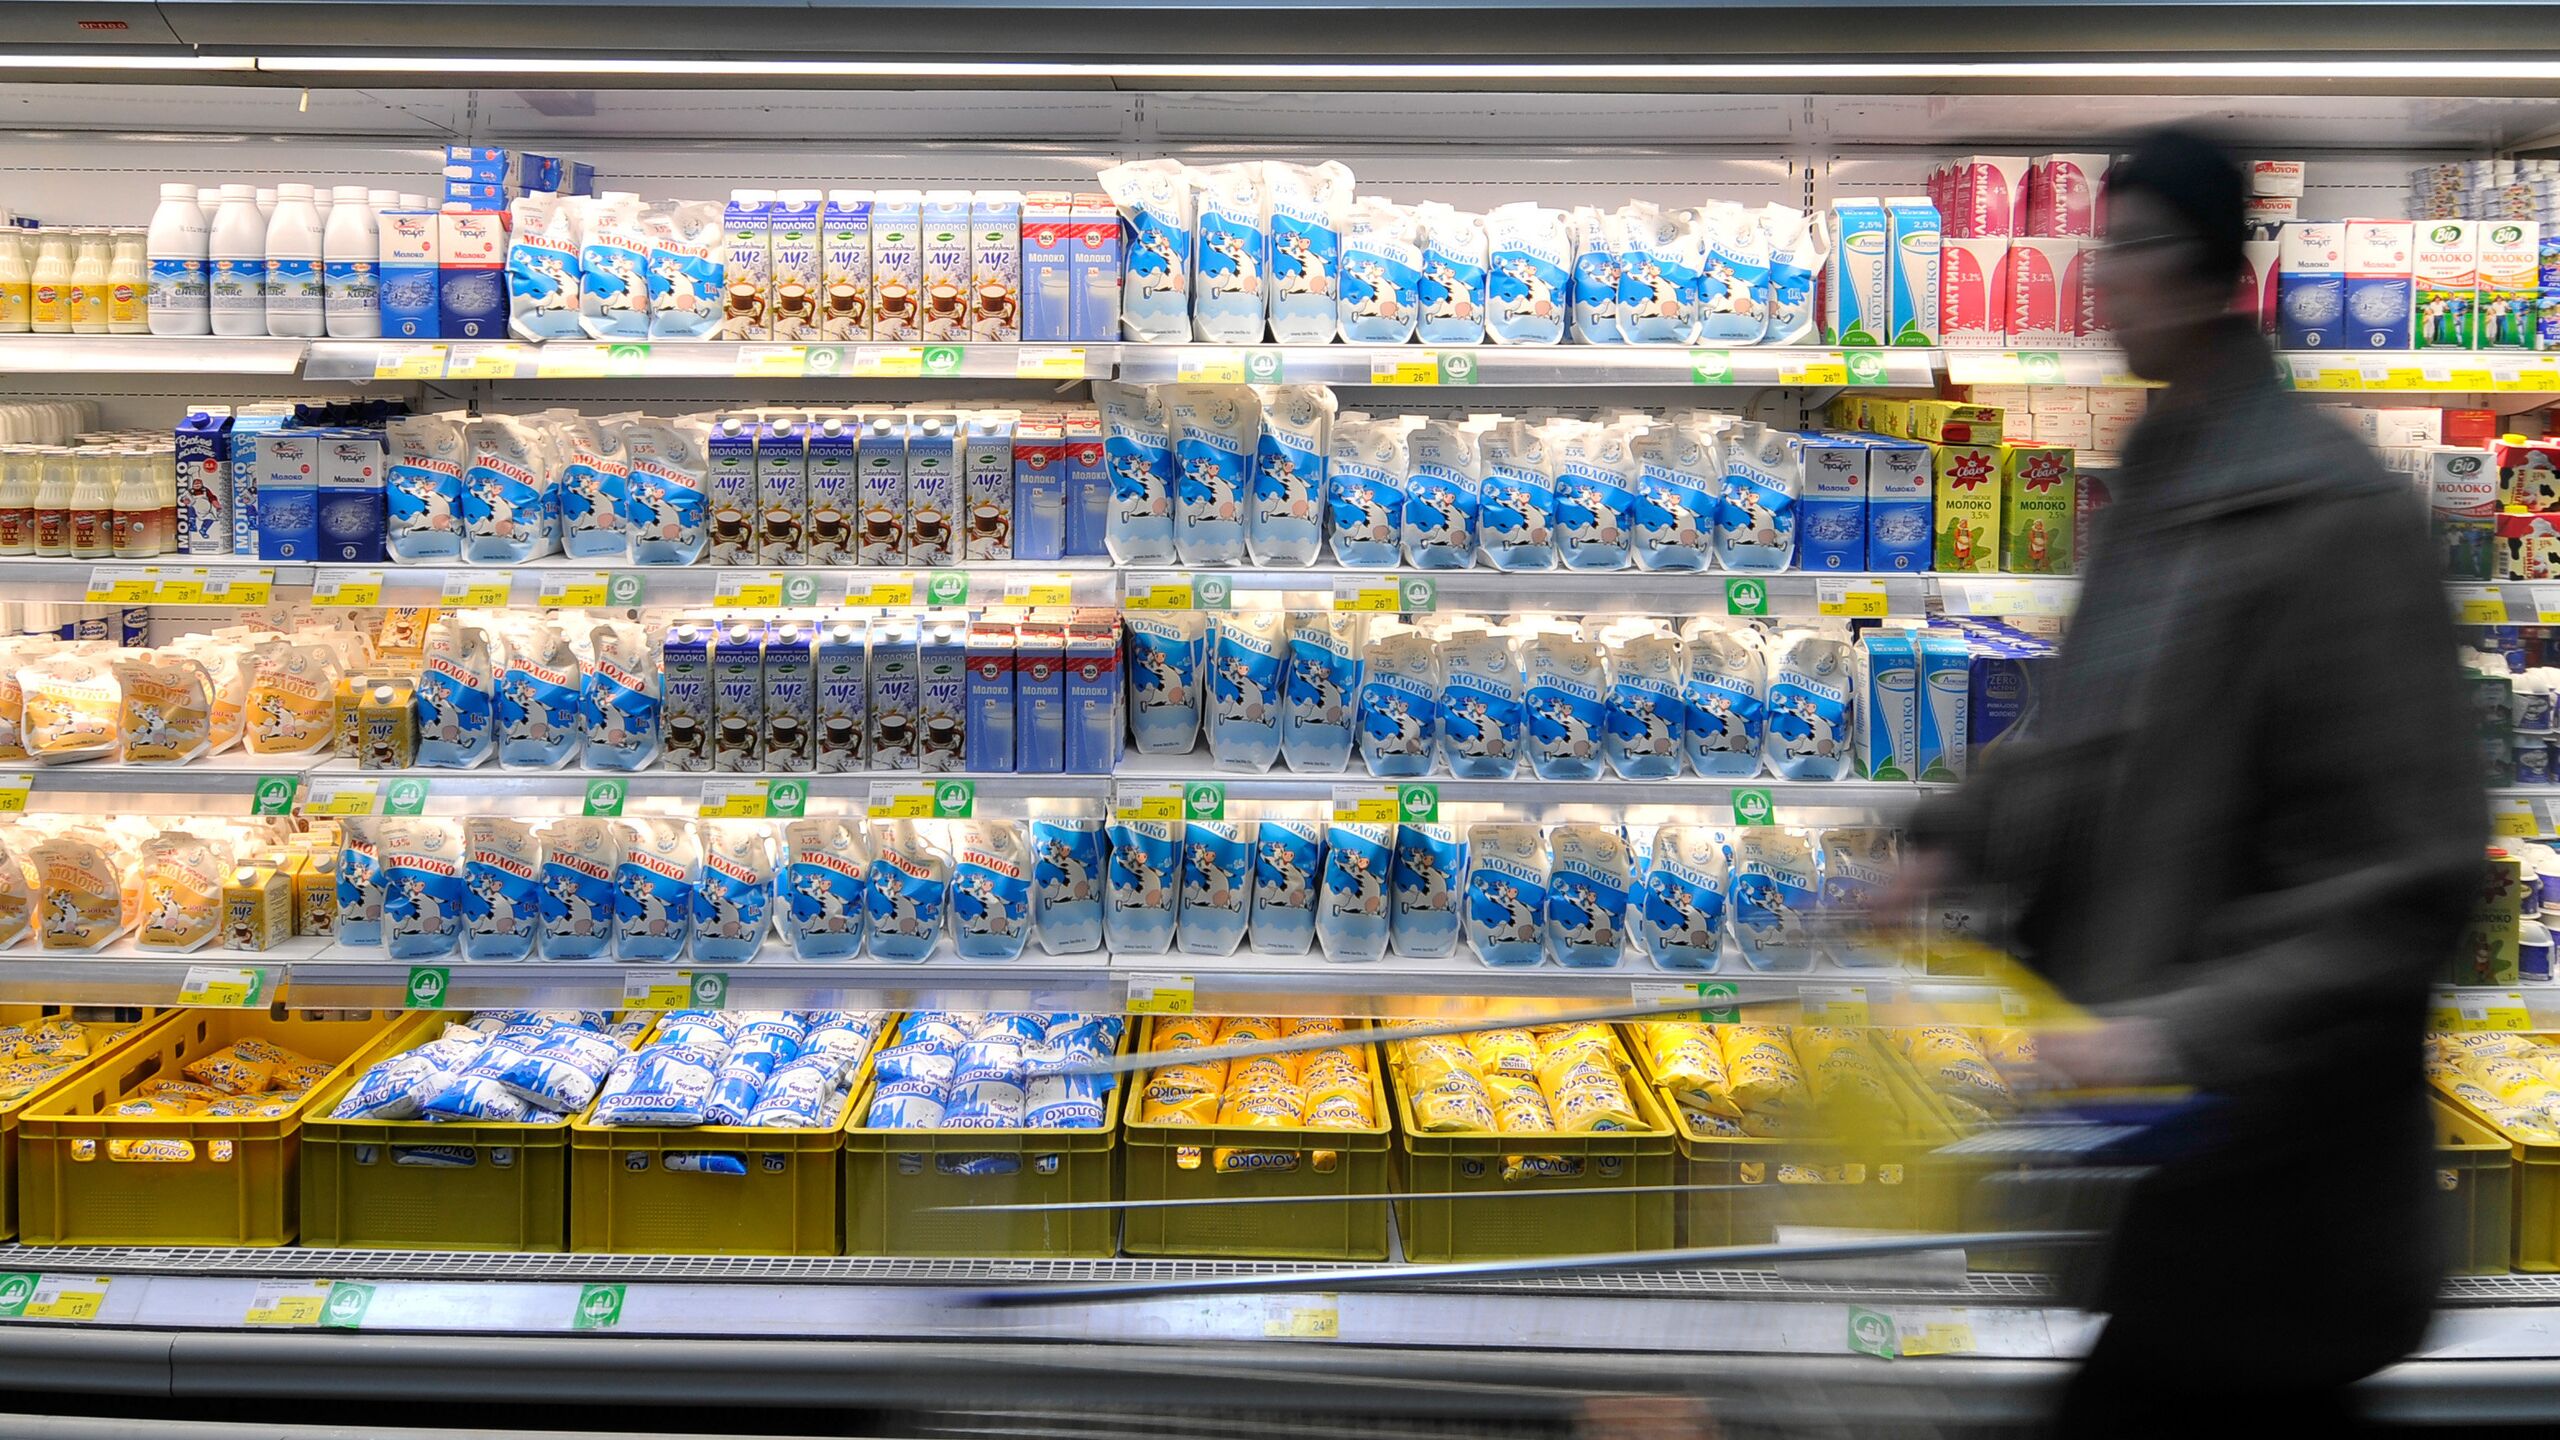 выкладка молочной продукции в магазине фото